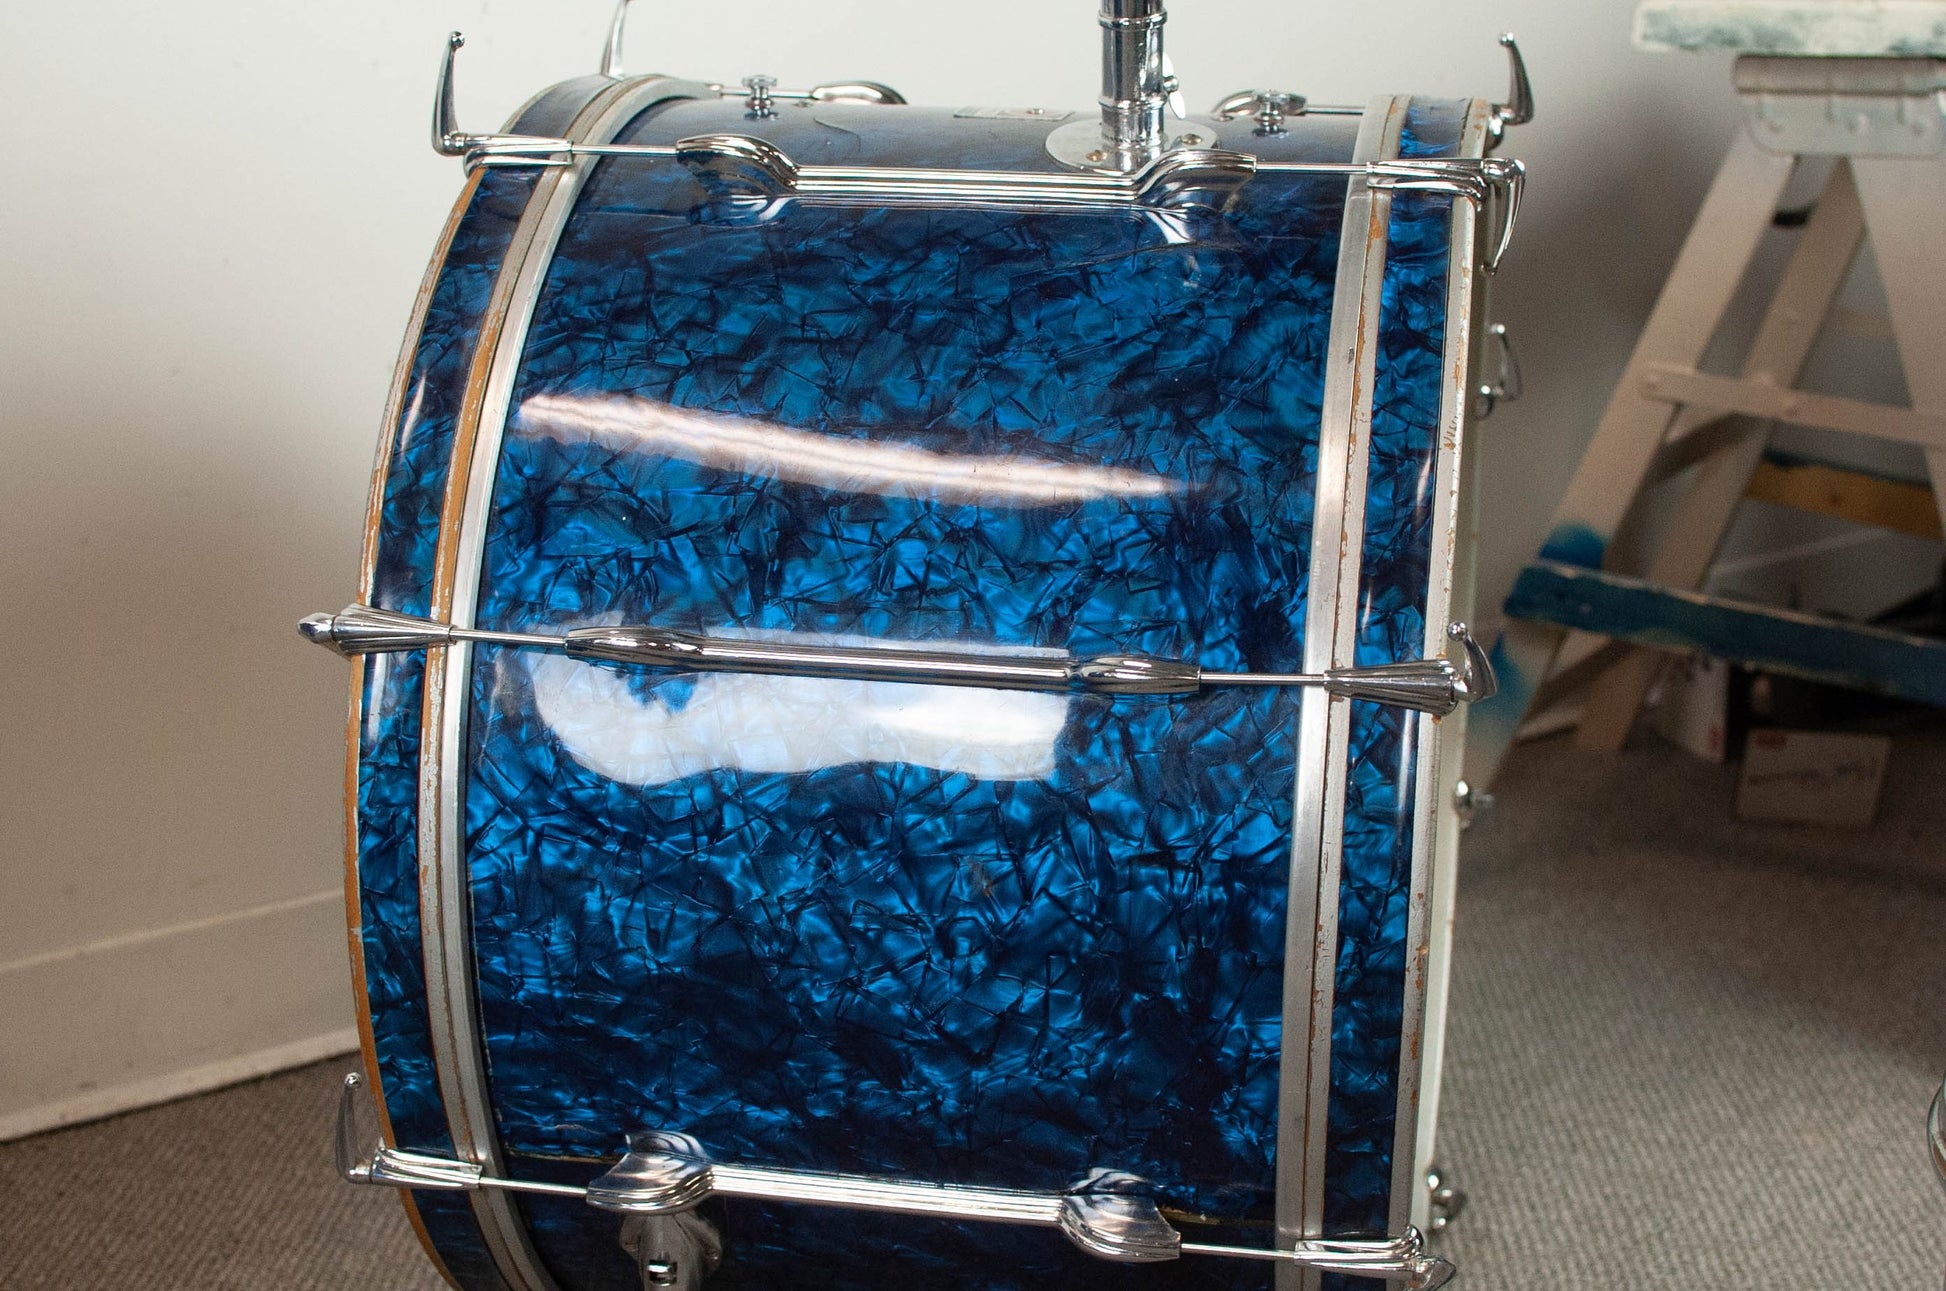 1960s Premier "B54" Blue Pearl Drum Set